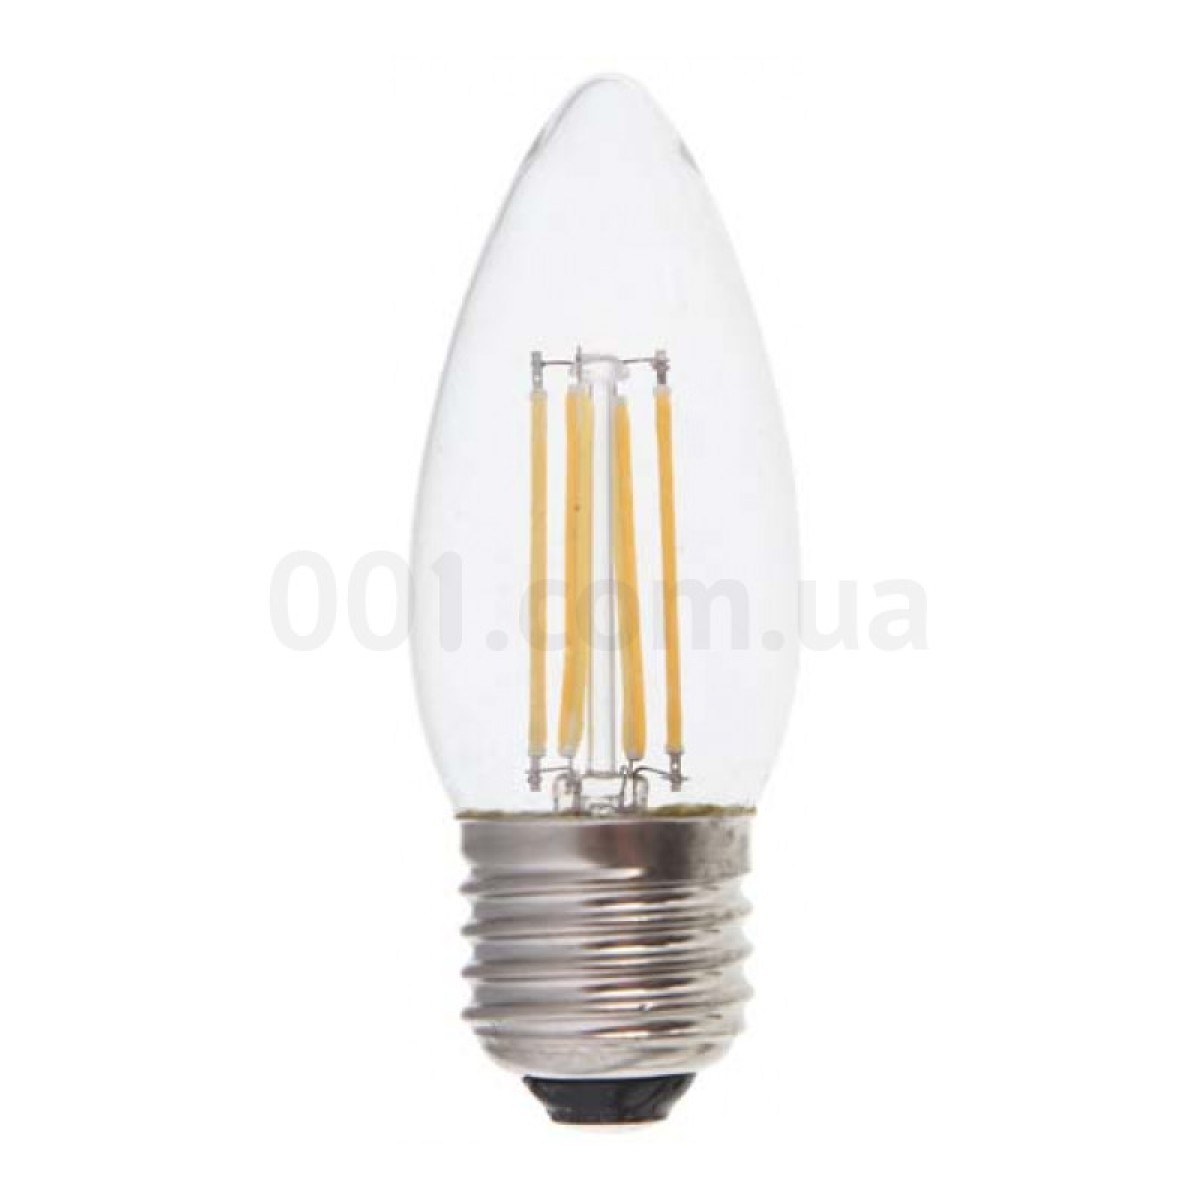 Светодиодная лампа LB-58 C37 (свеча) филамент 4Вт 4000K E27, Feron 256_256.jpg